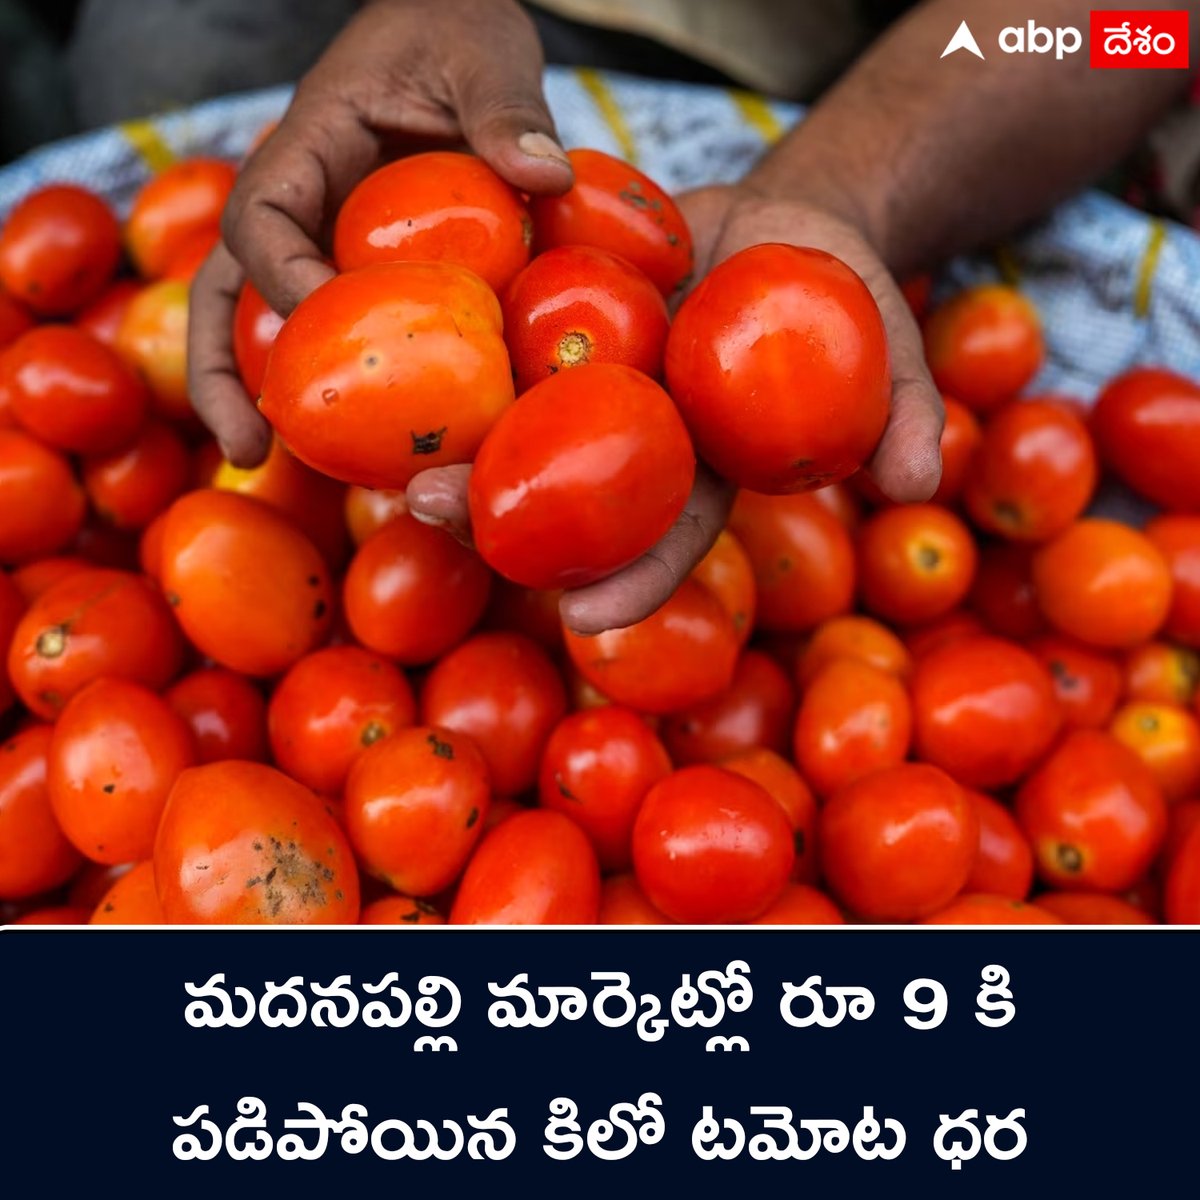 రైతులకు కన్నీళ్లు పెట్టిస్తున్న టమాట ధరలు 
#Tomatoes #Madanapalle #TomatoPrice